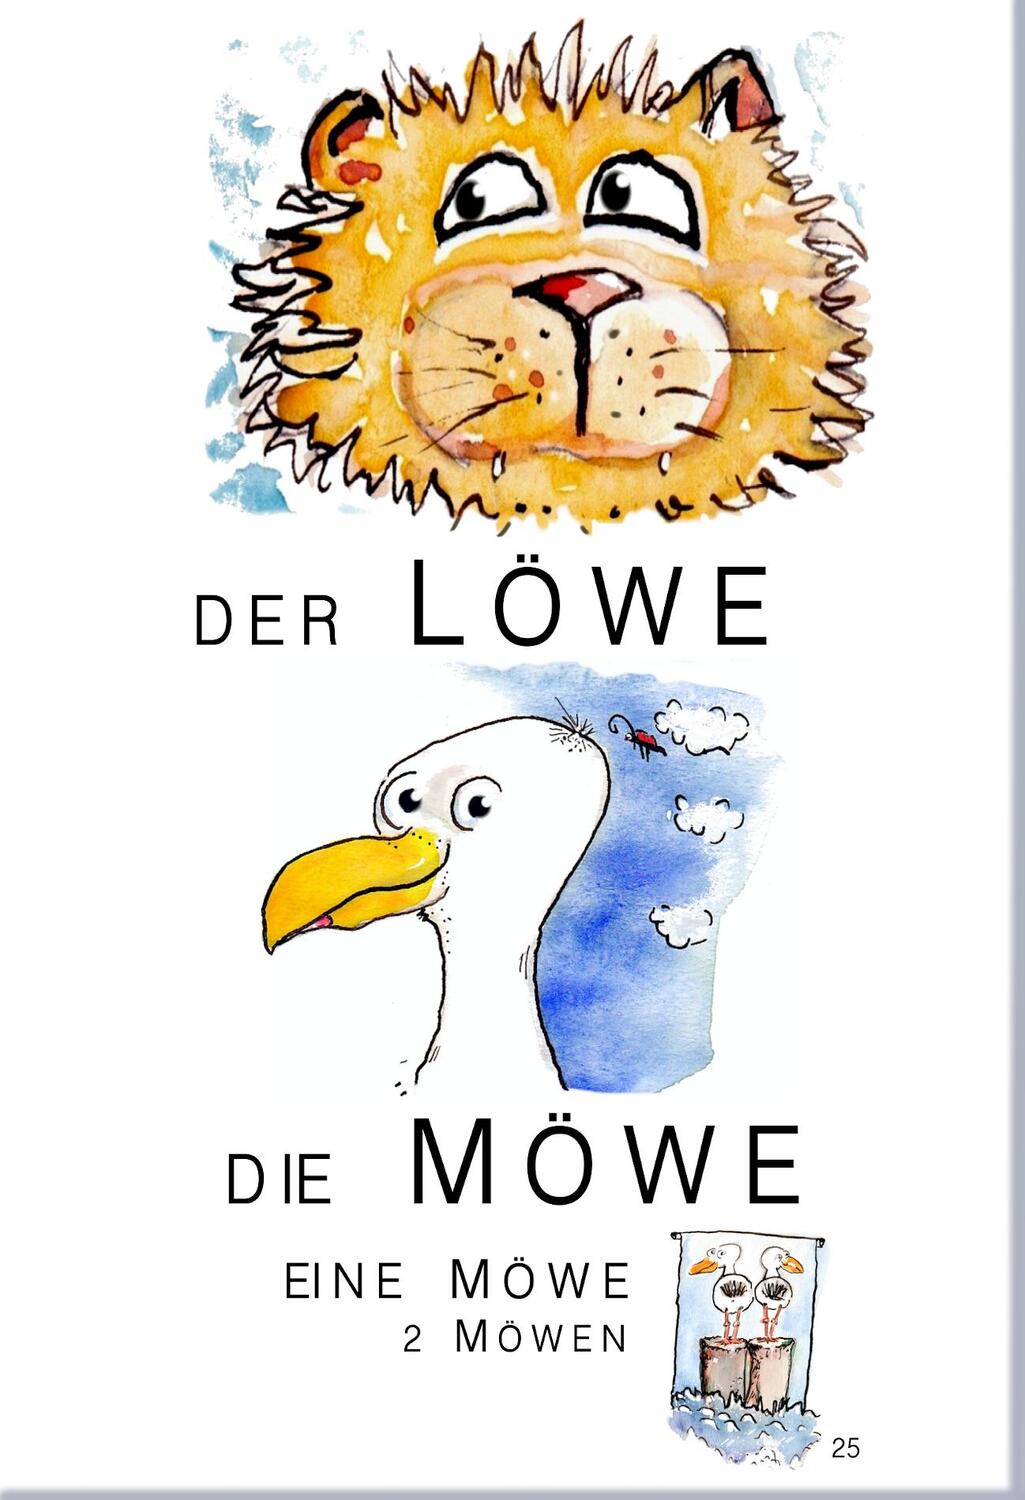 Bild: 9783942122375 | Lesen mit Biene, Frosch und Hase | Günther Thomé (u. a.) | Broschüre